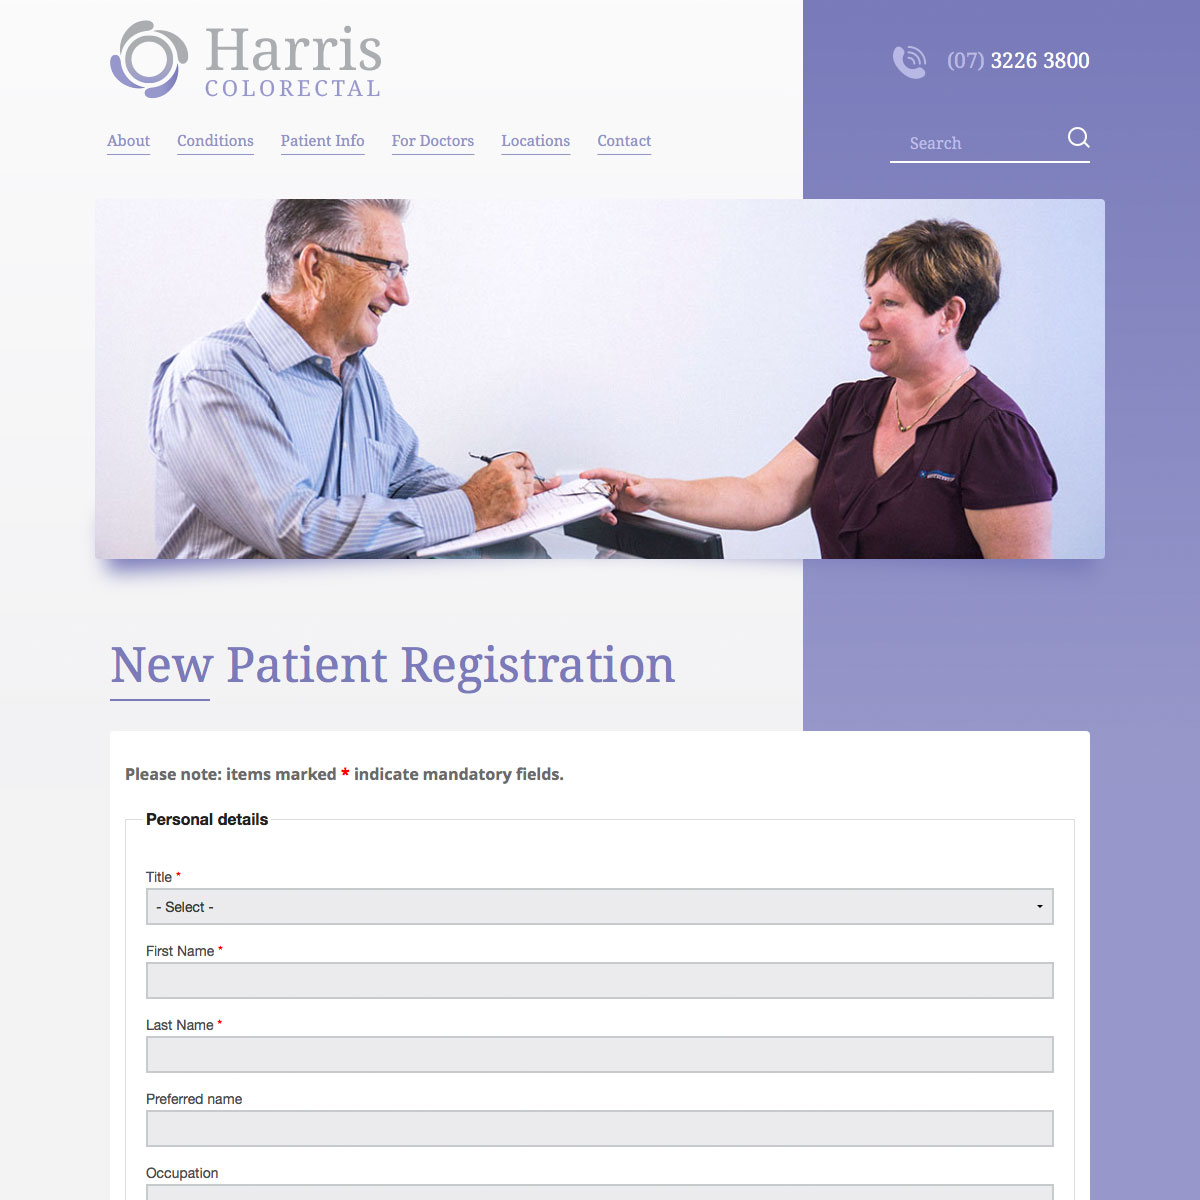 Harris Colorectal - New Patient Registration